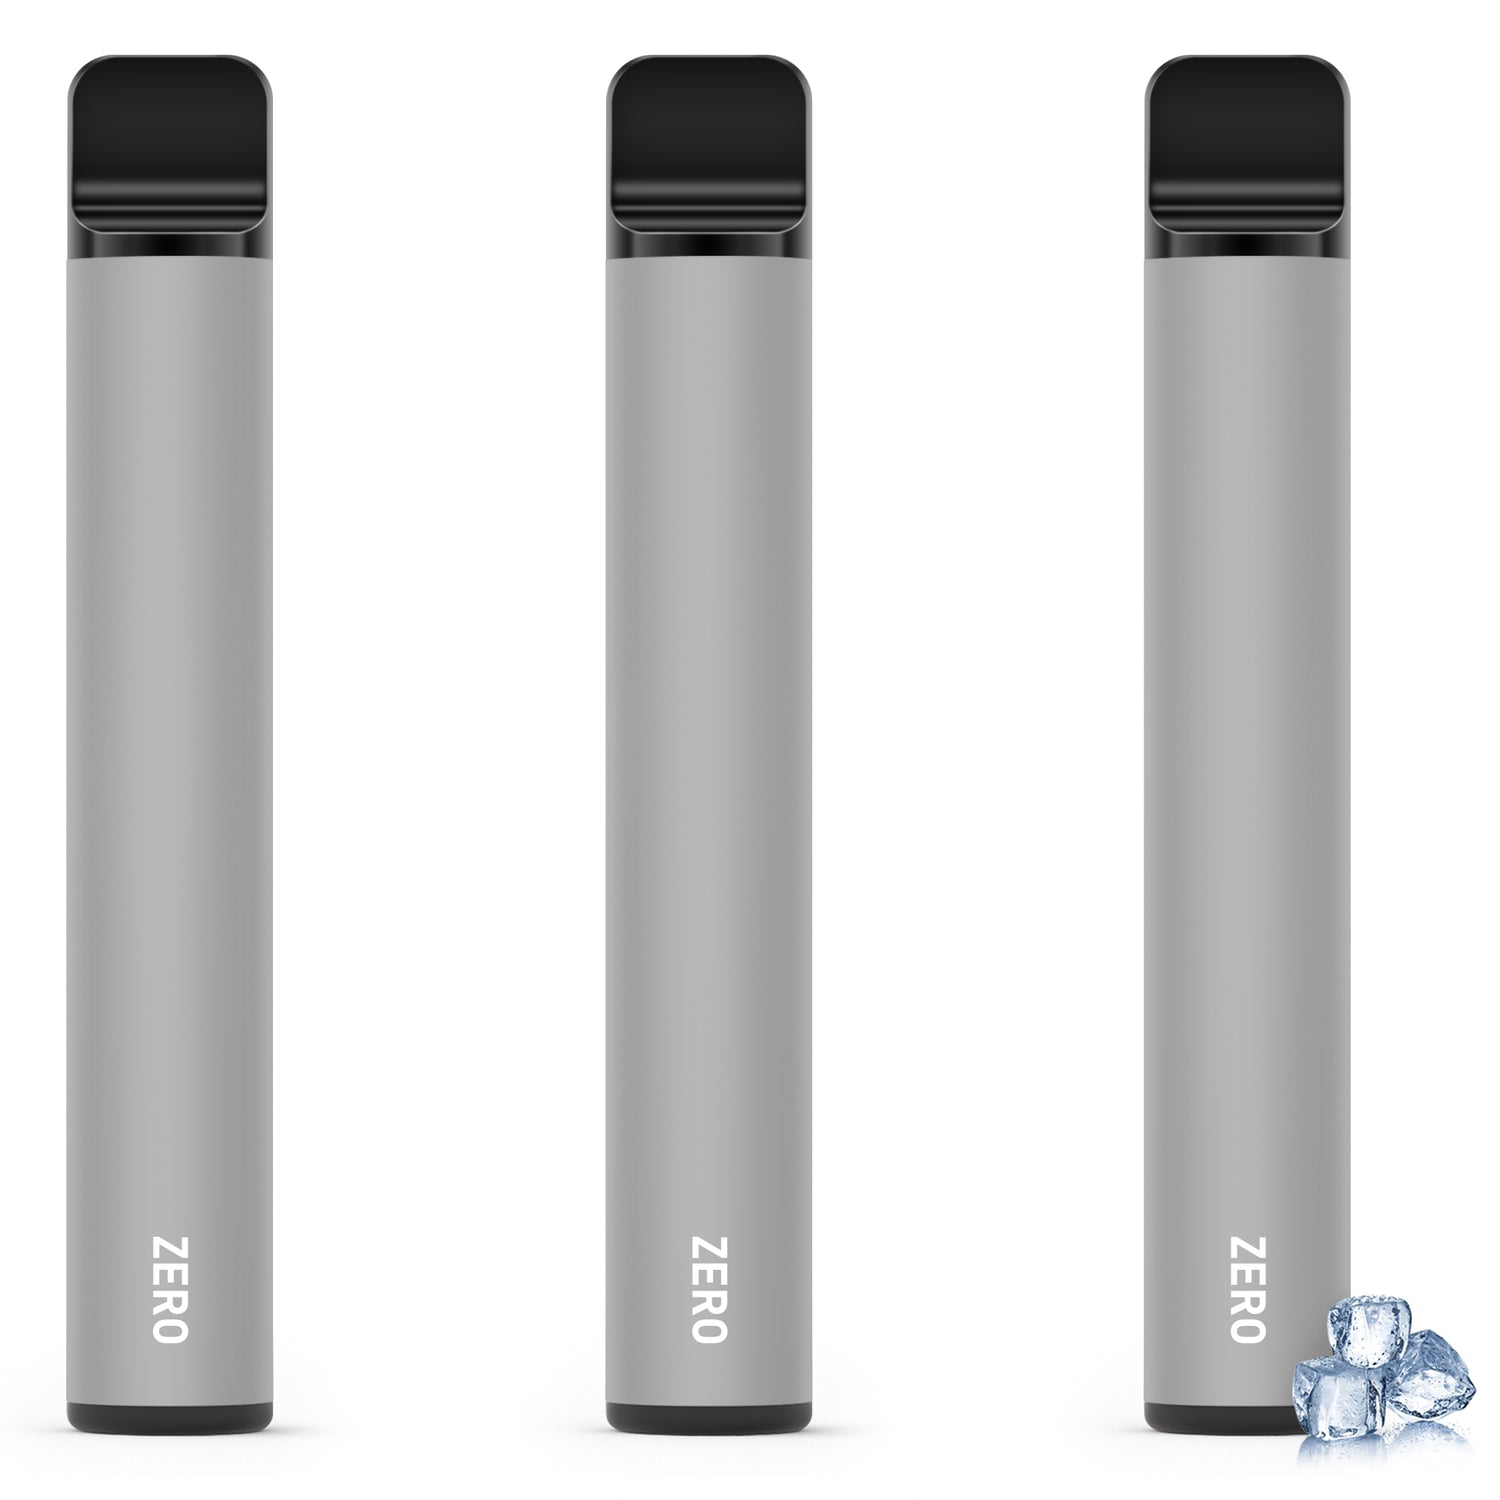 KINOE Disposable Electronic Cigarette Set of 3 (Super Cool Feeling)